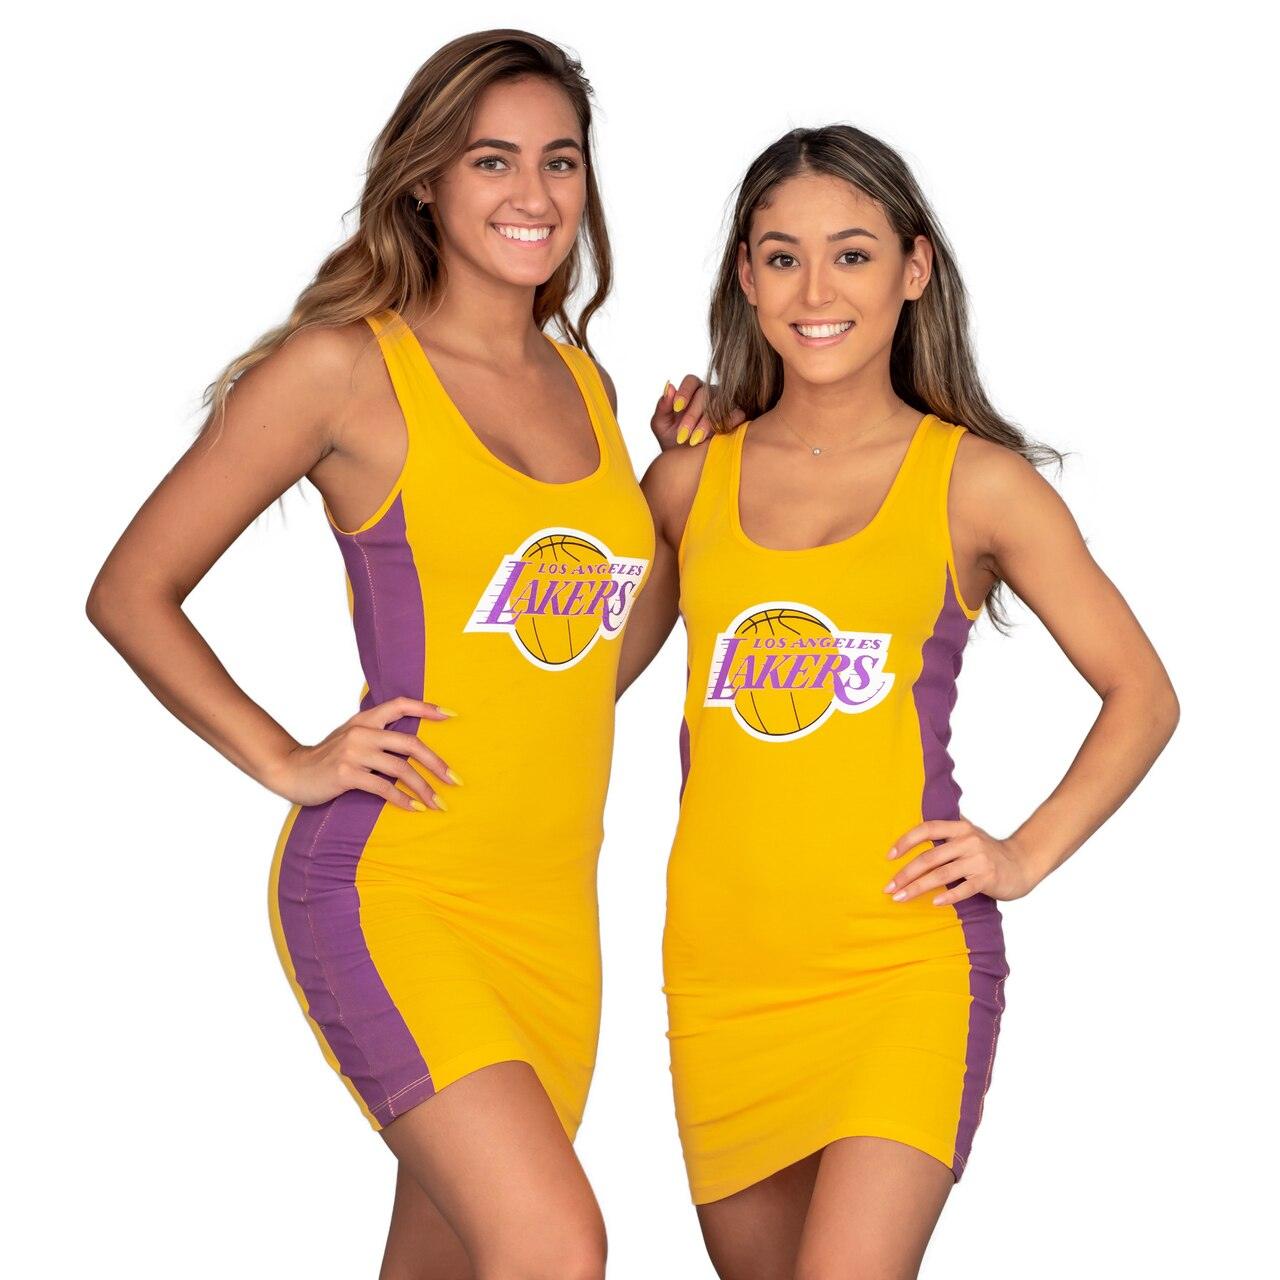 Lakers Jersey Dress 